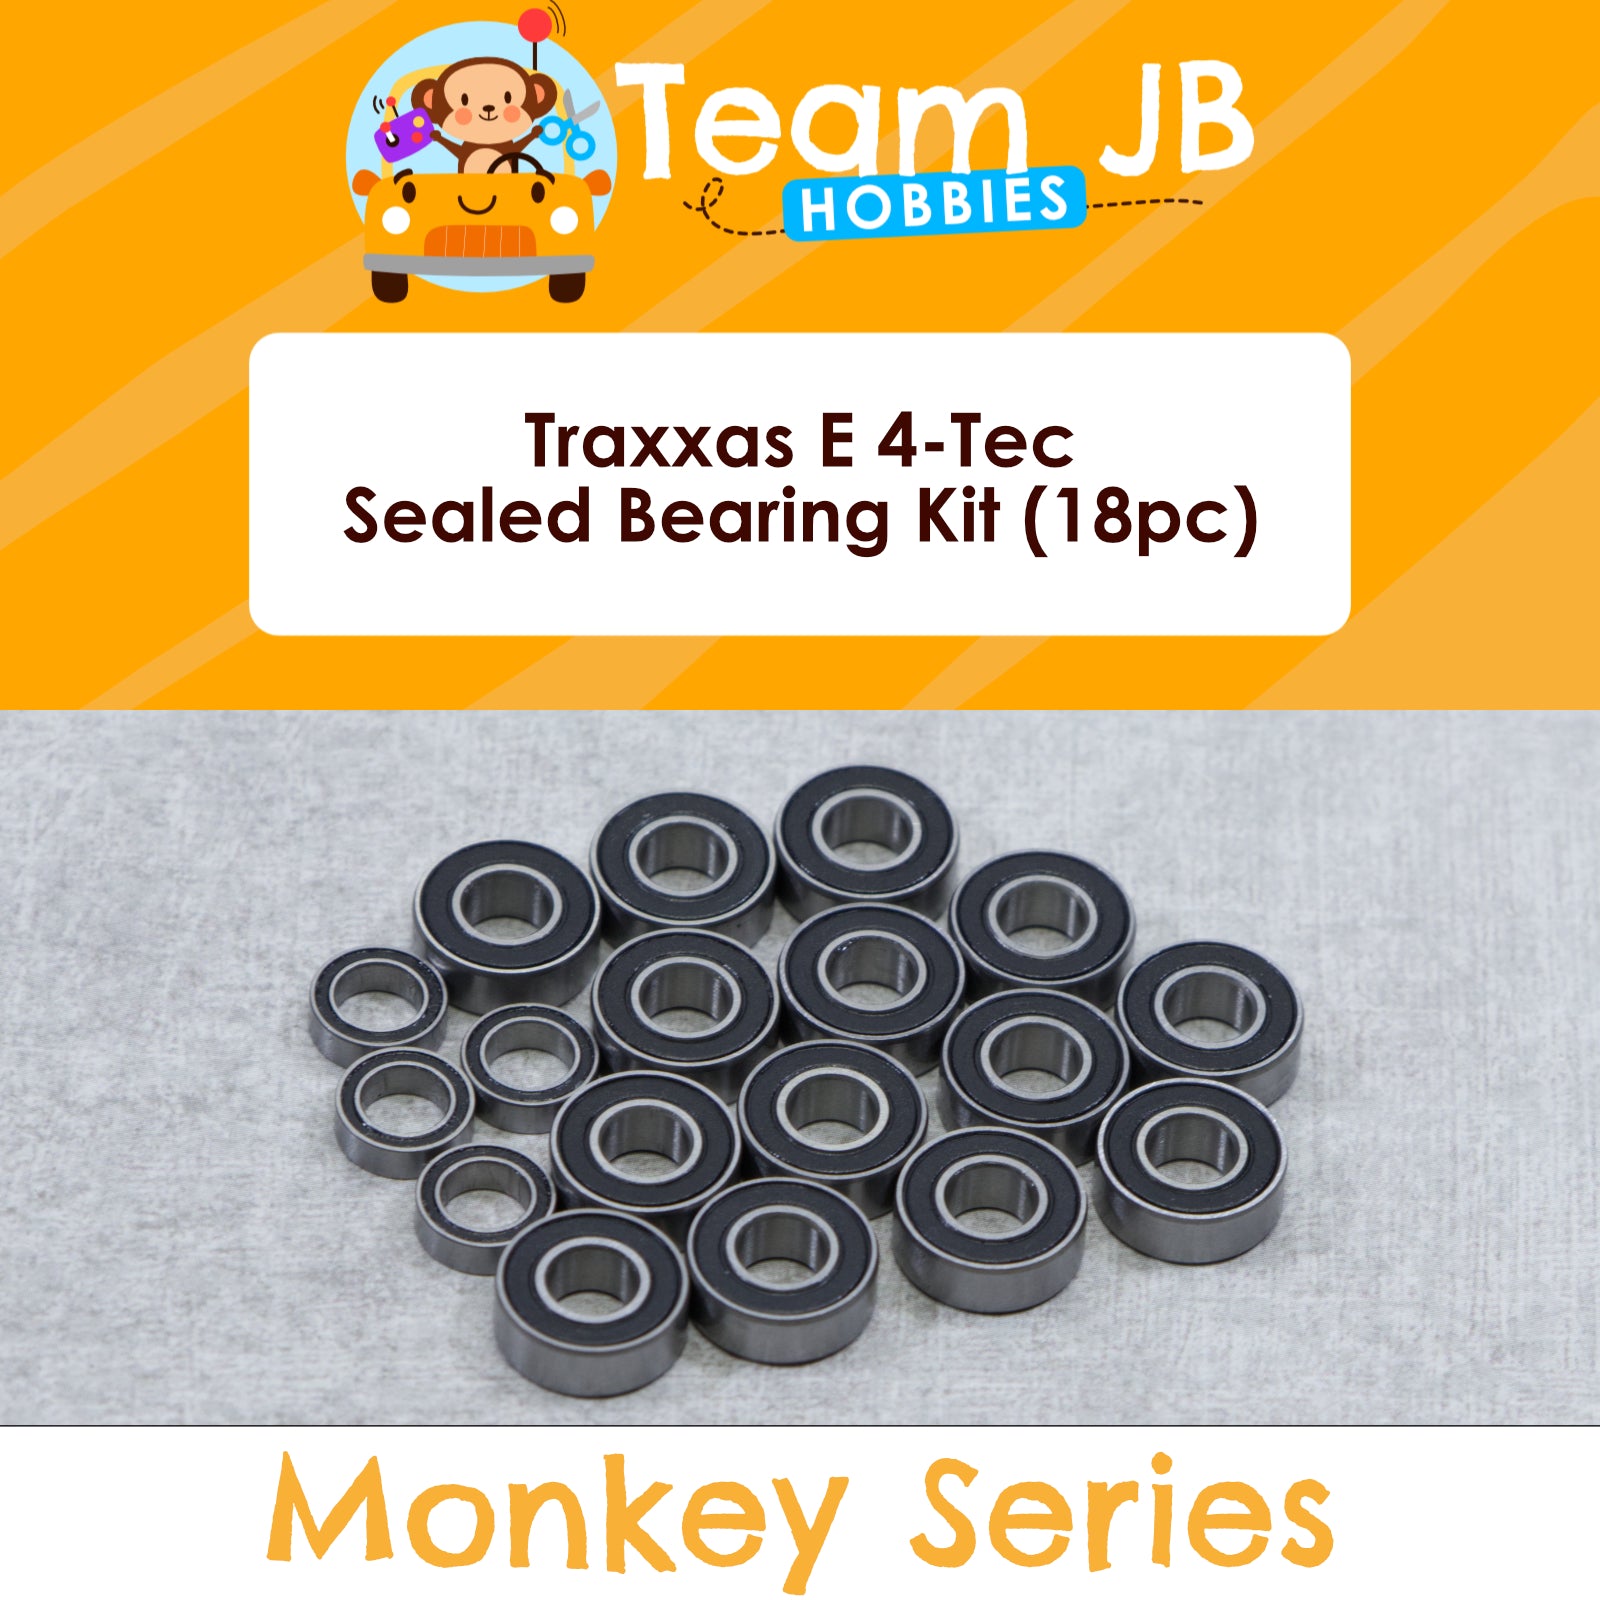 Traxxas E 4-Tec - Sealed Bearing Kit